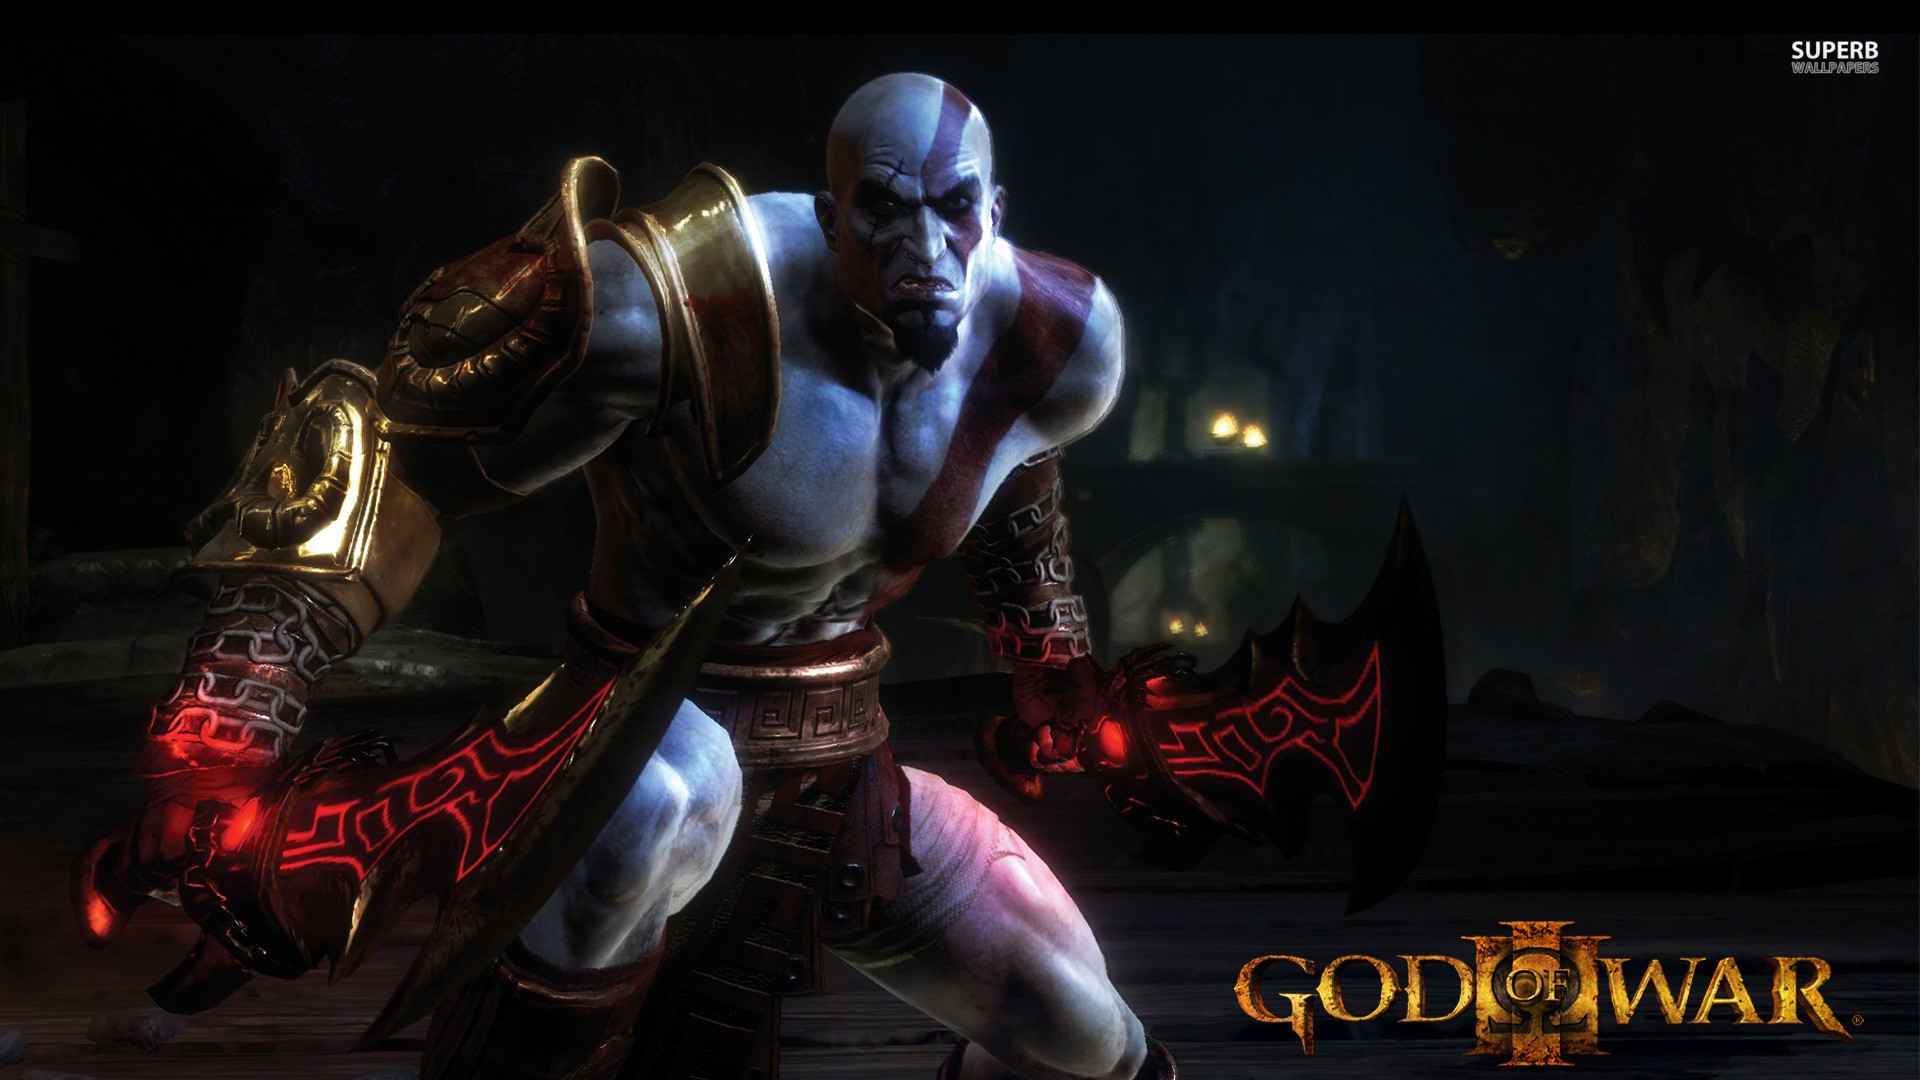 god of war 1 pc game free download full version kickass